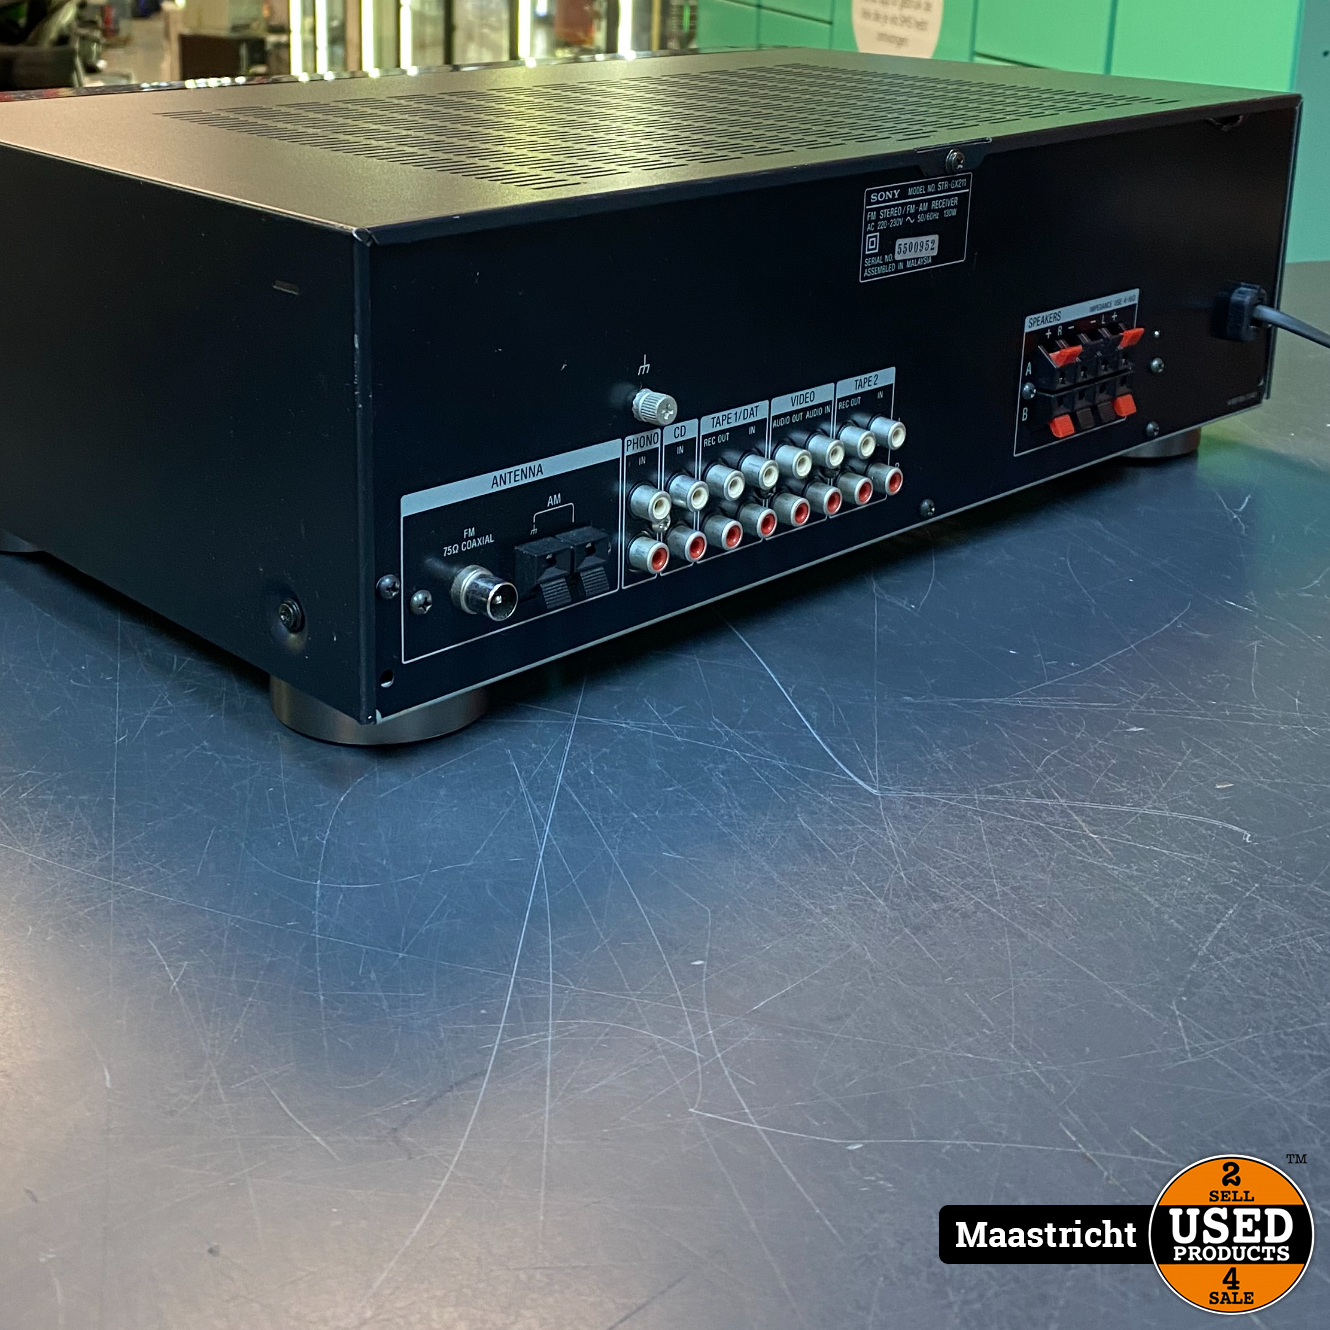 commando blad Slip schoenen SONY STR-GX211 stereo receiver met Phono aansluiting, in zeer goede staat -  Used Products Maastricht